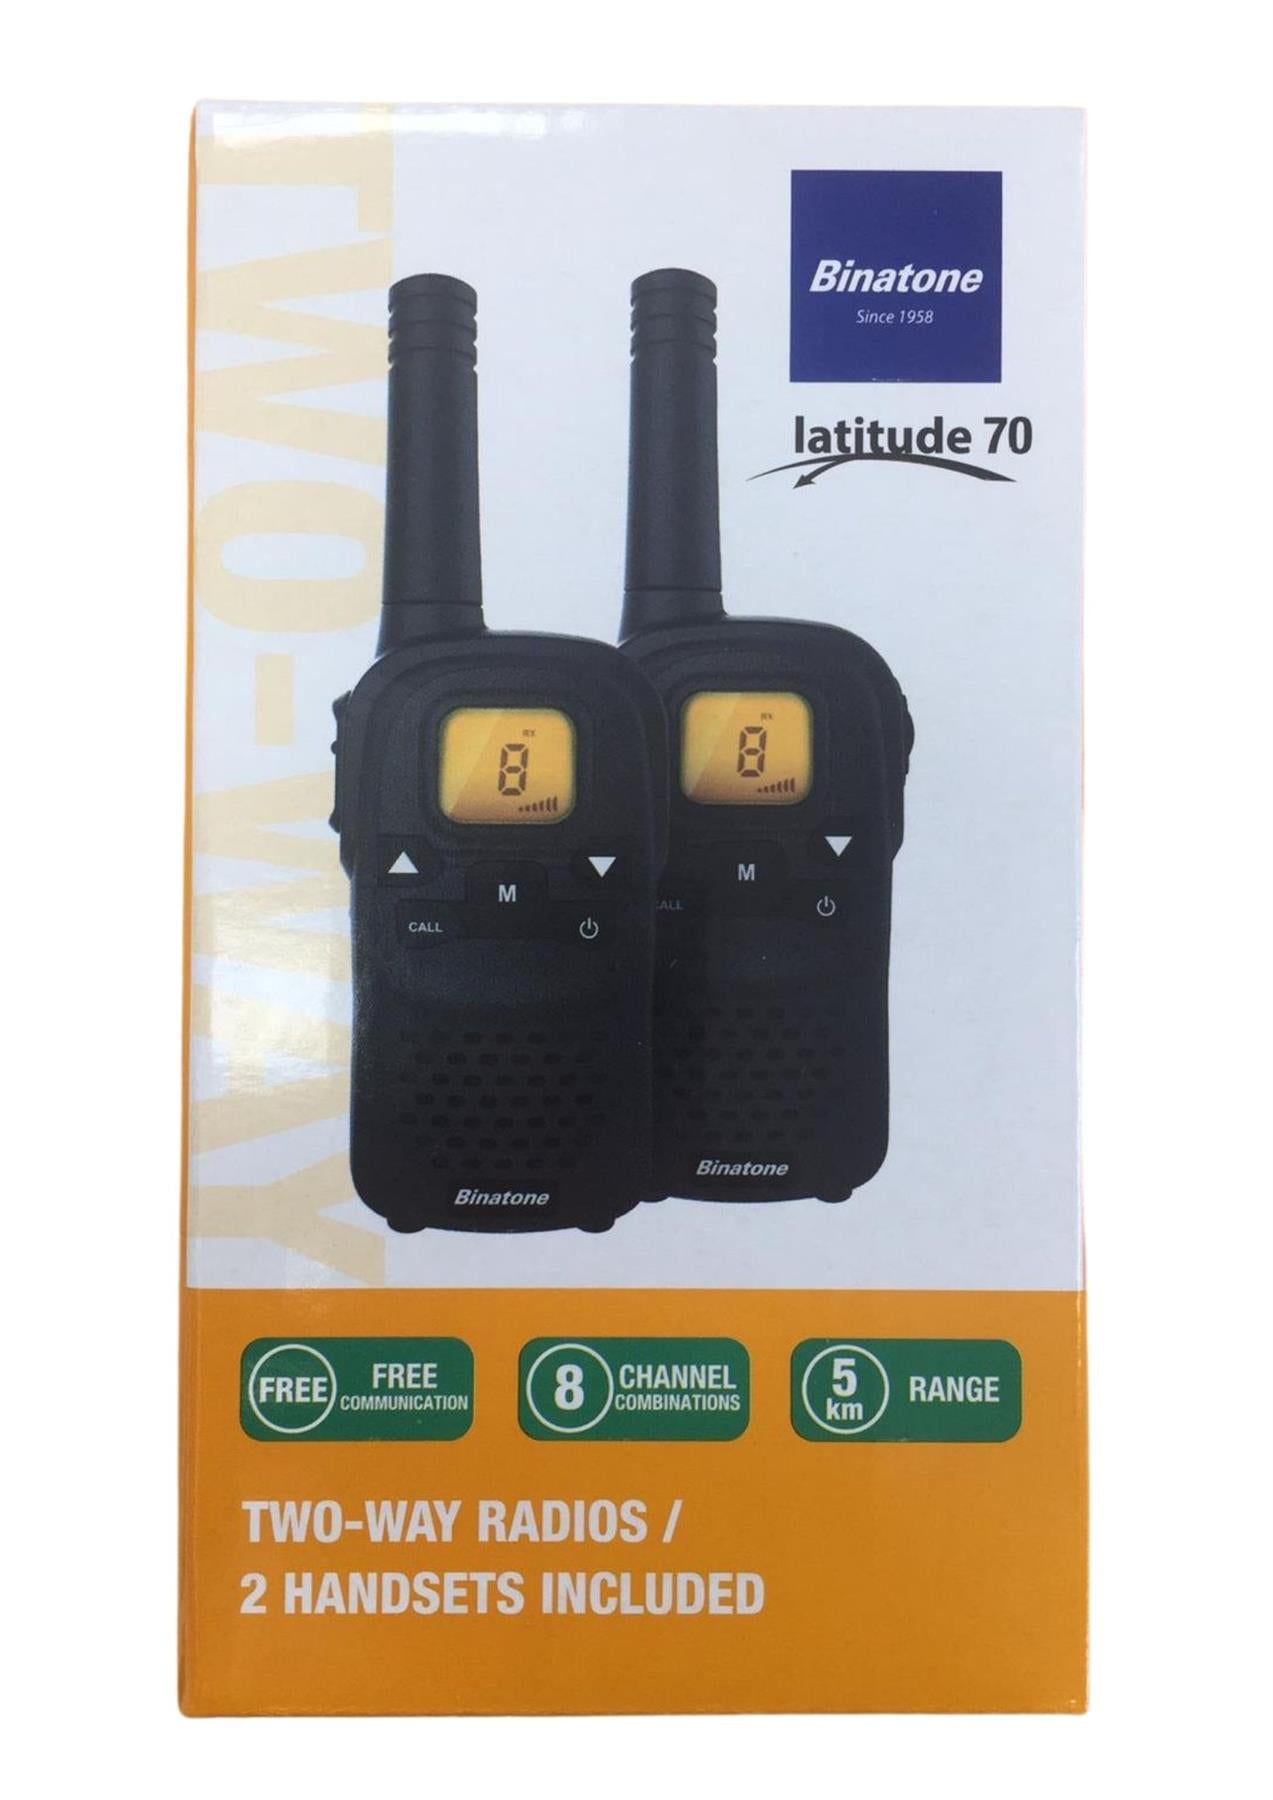 Binatone Latitude 70 Two Way Radios / 2 Handset Included